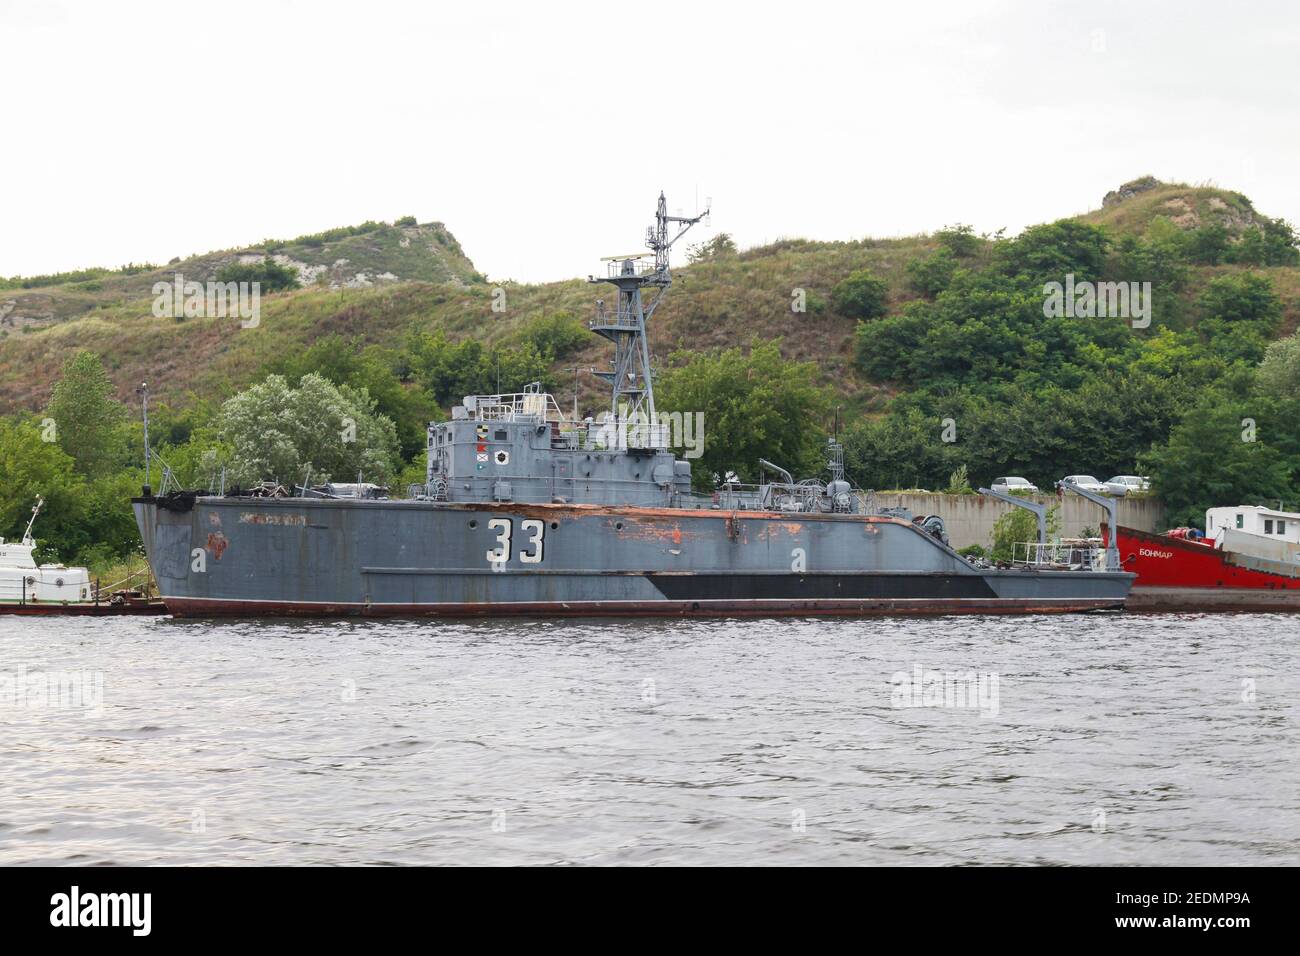 Varna, Bulgarien - 16. Juli 2014: Alte Minenkehrmaschine mit der Rumpfnummer 33 der bulgarischen Marine steht am Marinestützpunkt Varna Stockfoto